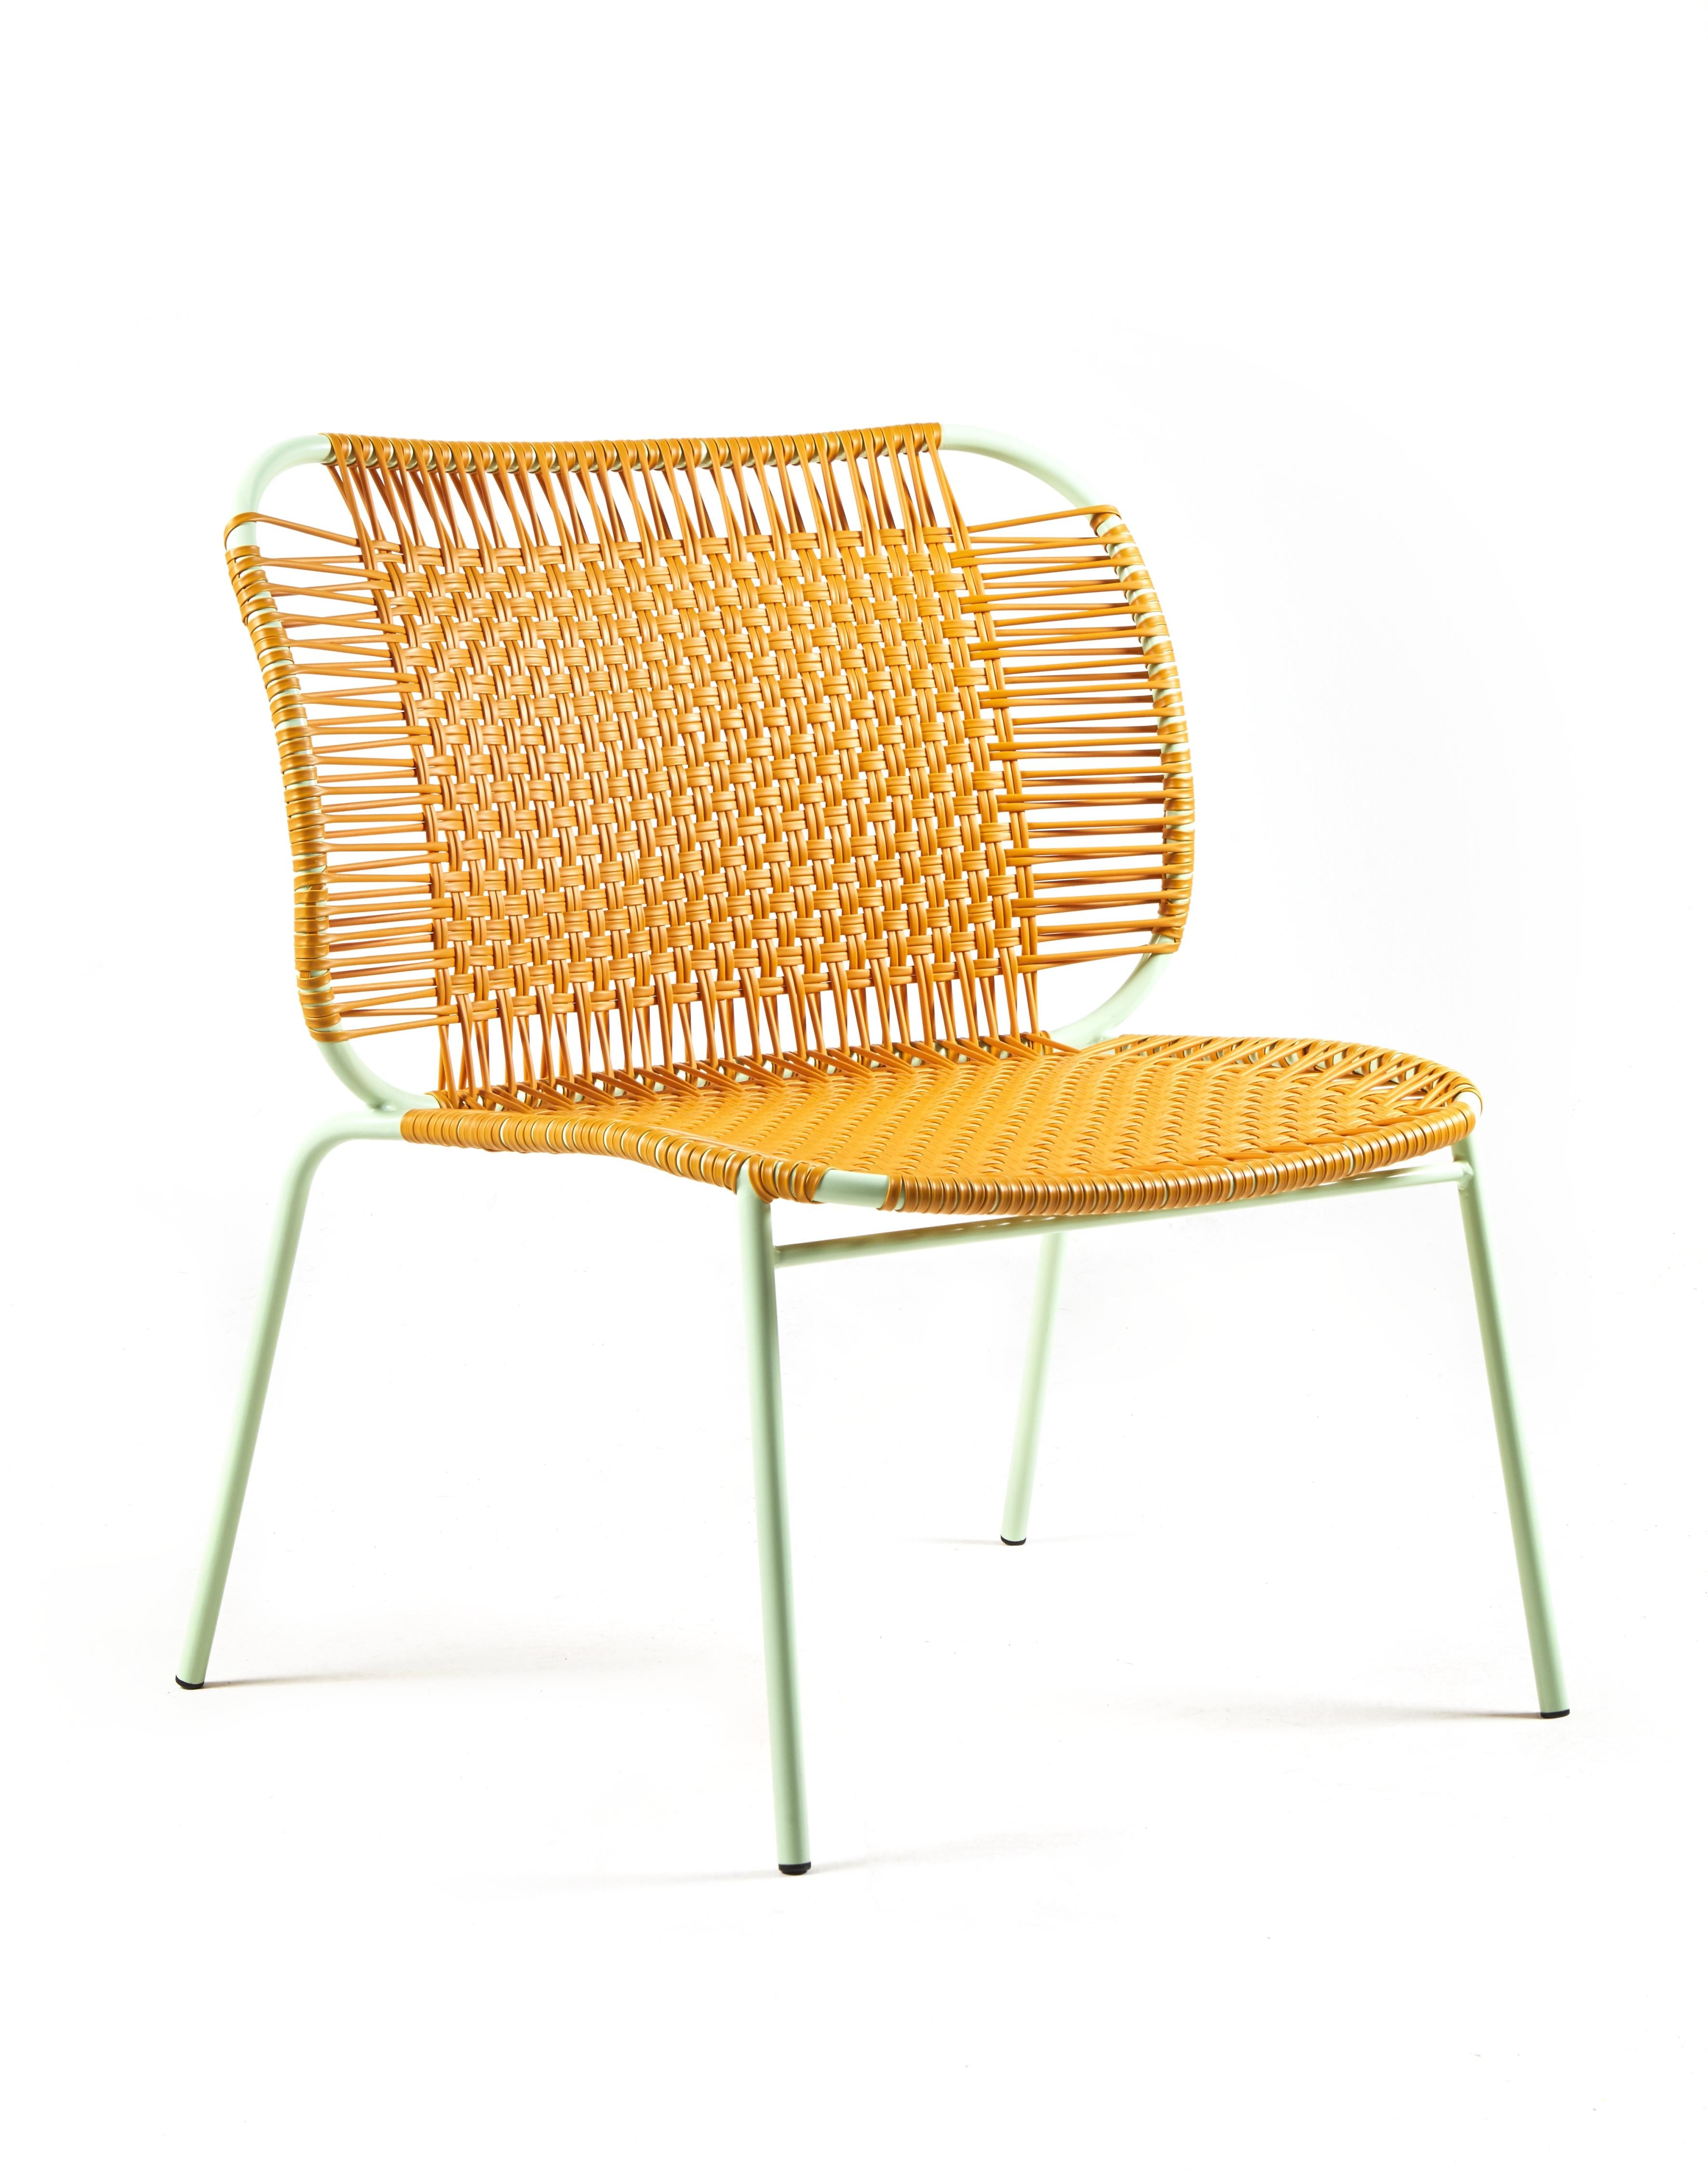 Ensemble de 4 chaises basses Honey cielo lounge de Sebastian Herkner
Matériaux : Tubes d'acier galvanisés et revêtus de poudre. Les cordes en PVC sont fabriquées à partir de plastique recyclé.
Technique : Fabriqué à partir de plastique recyclé et